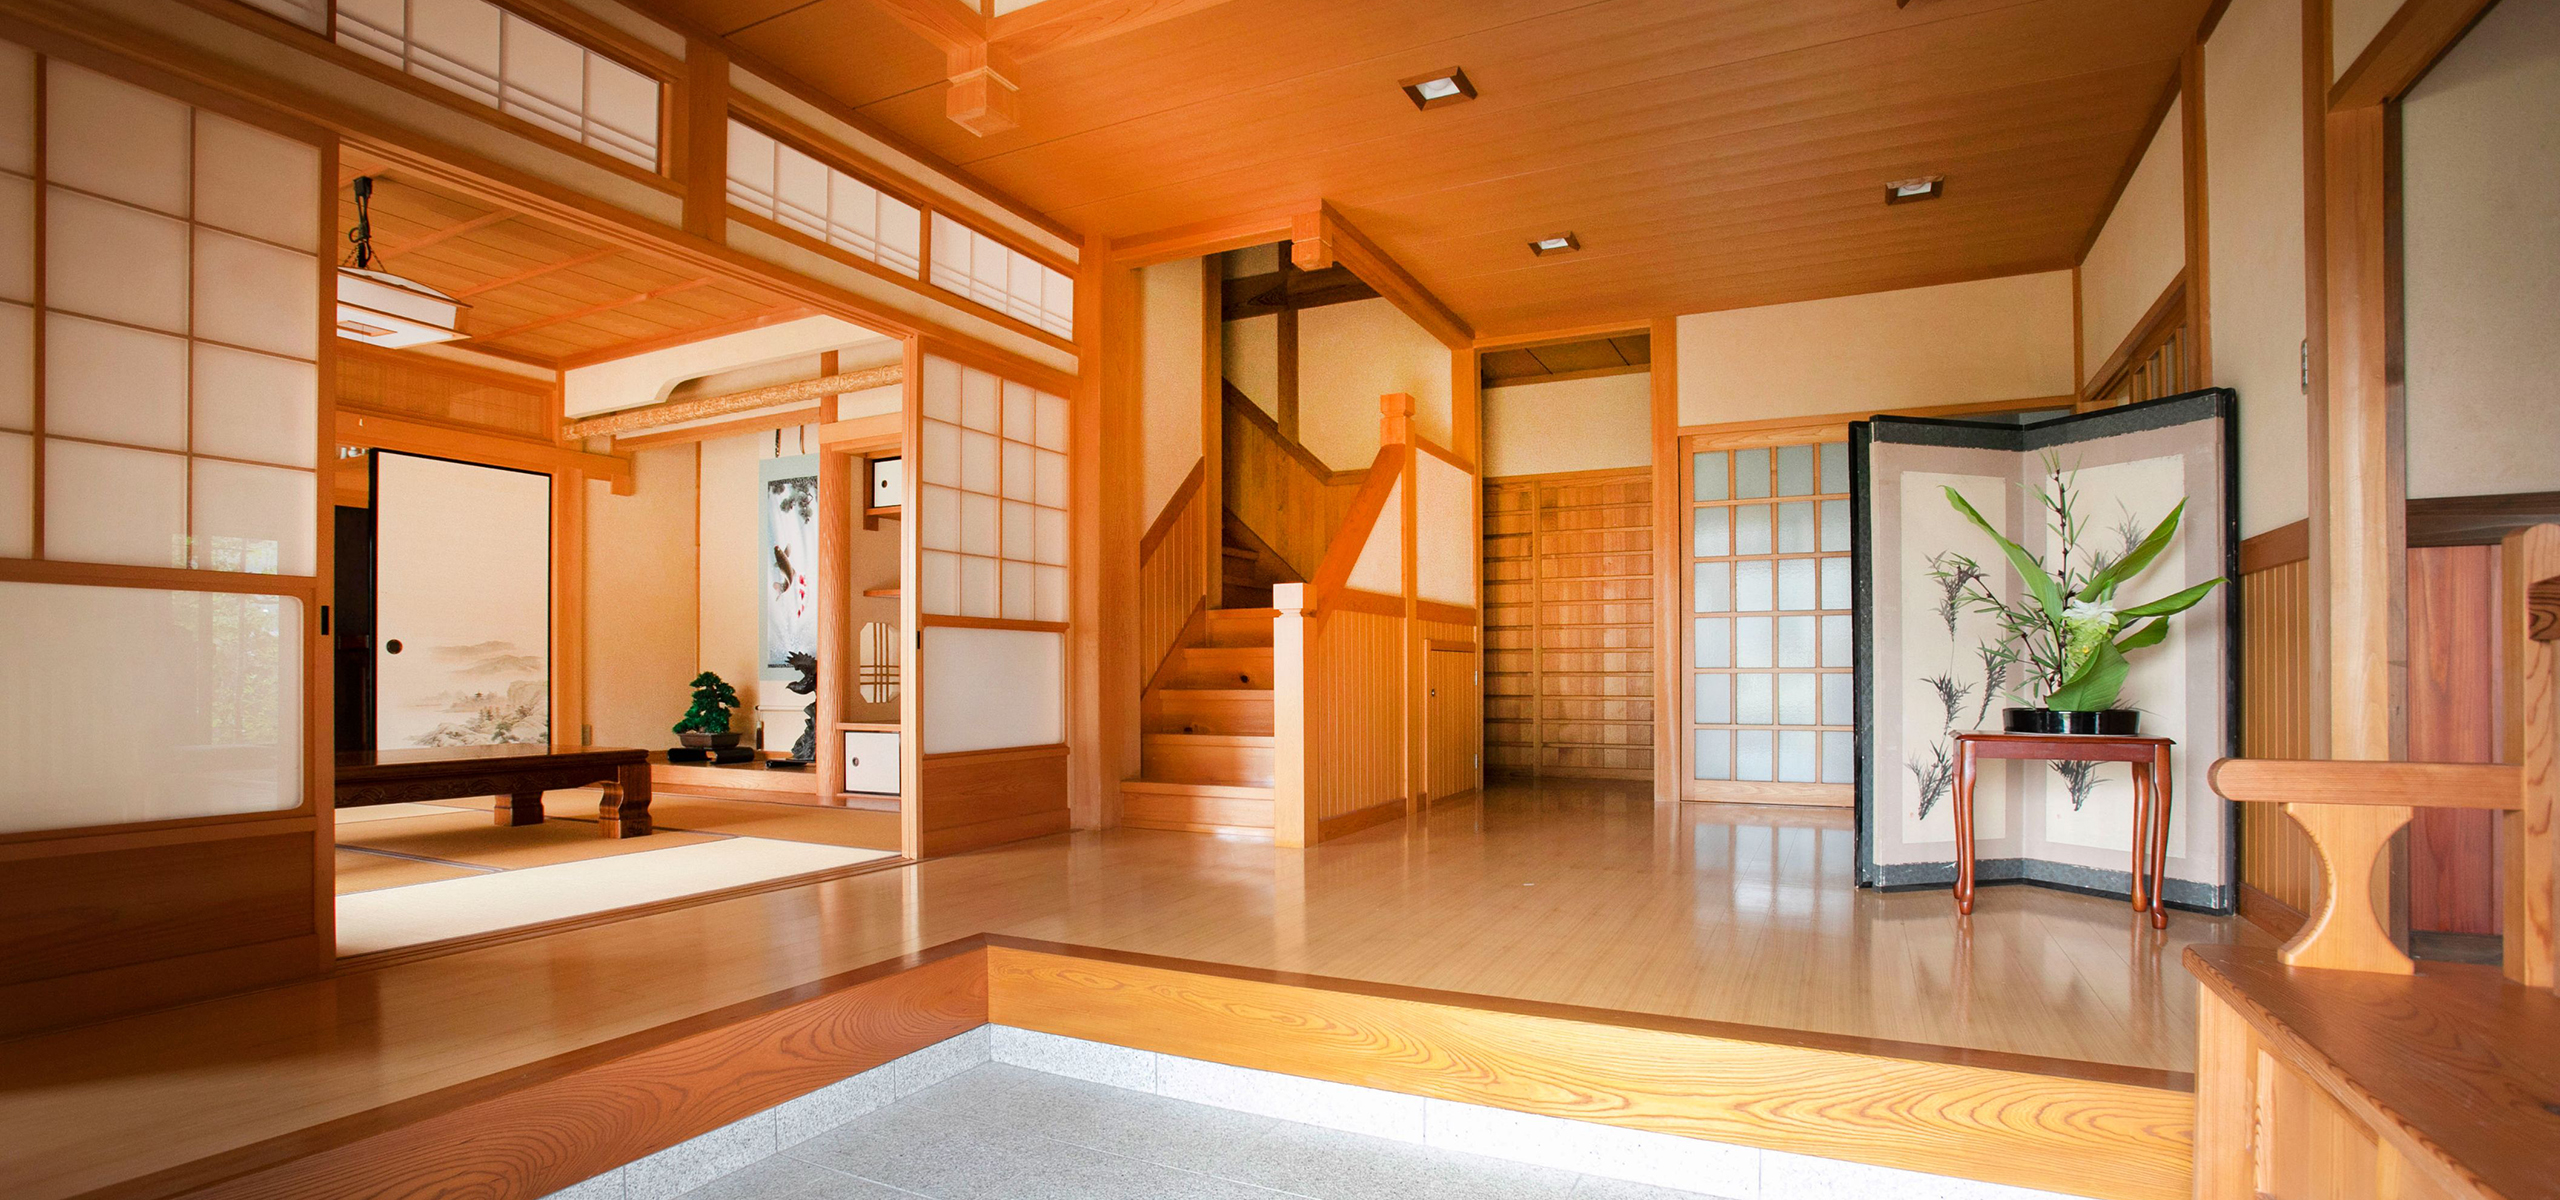 日本の伝統を守る家